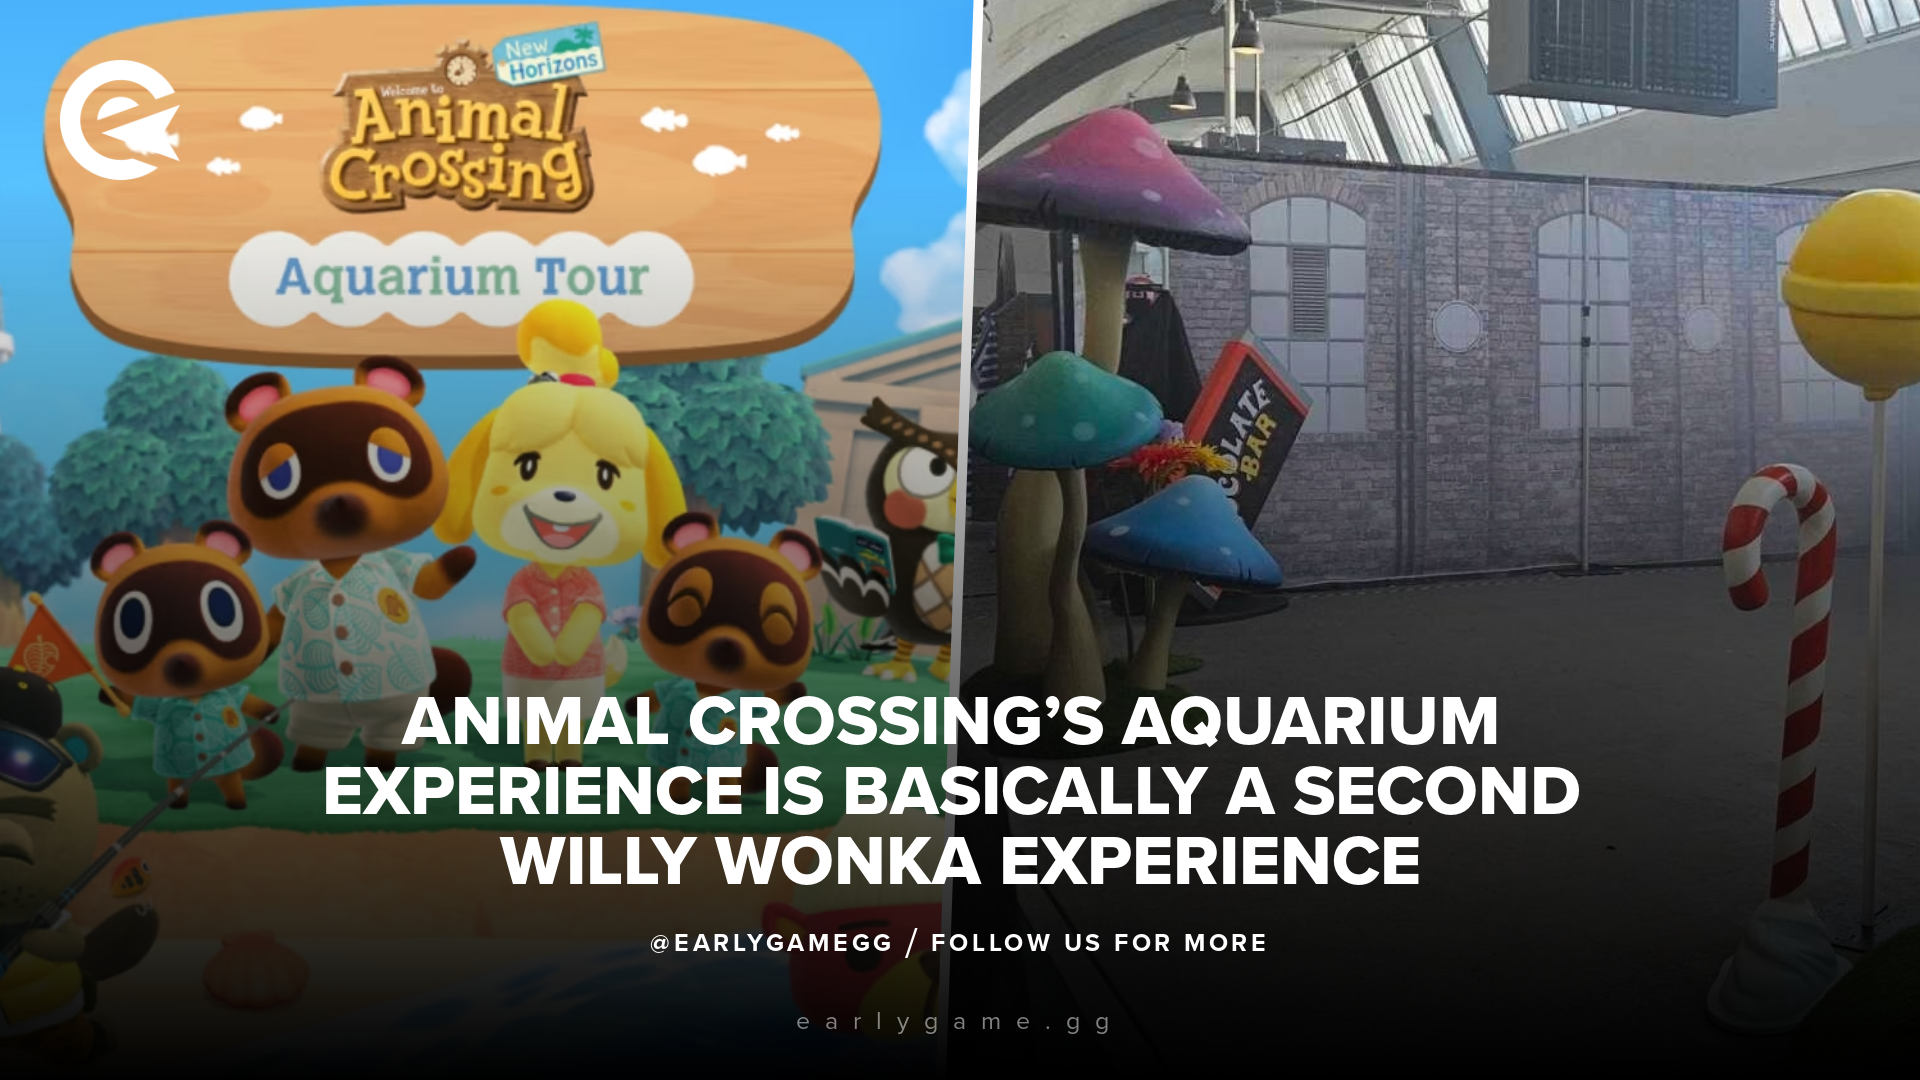 Опыт аквариума Animal Crossing — это, по сути, второй опыт Вилли Вонки